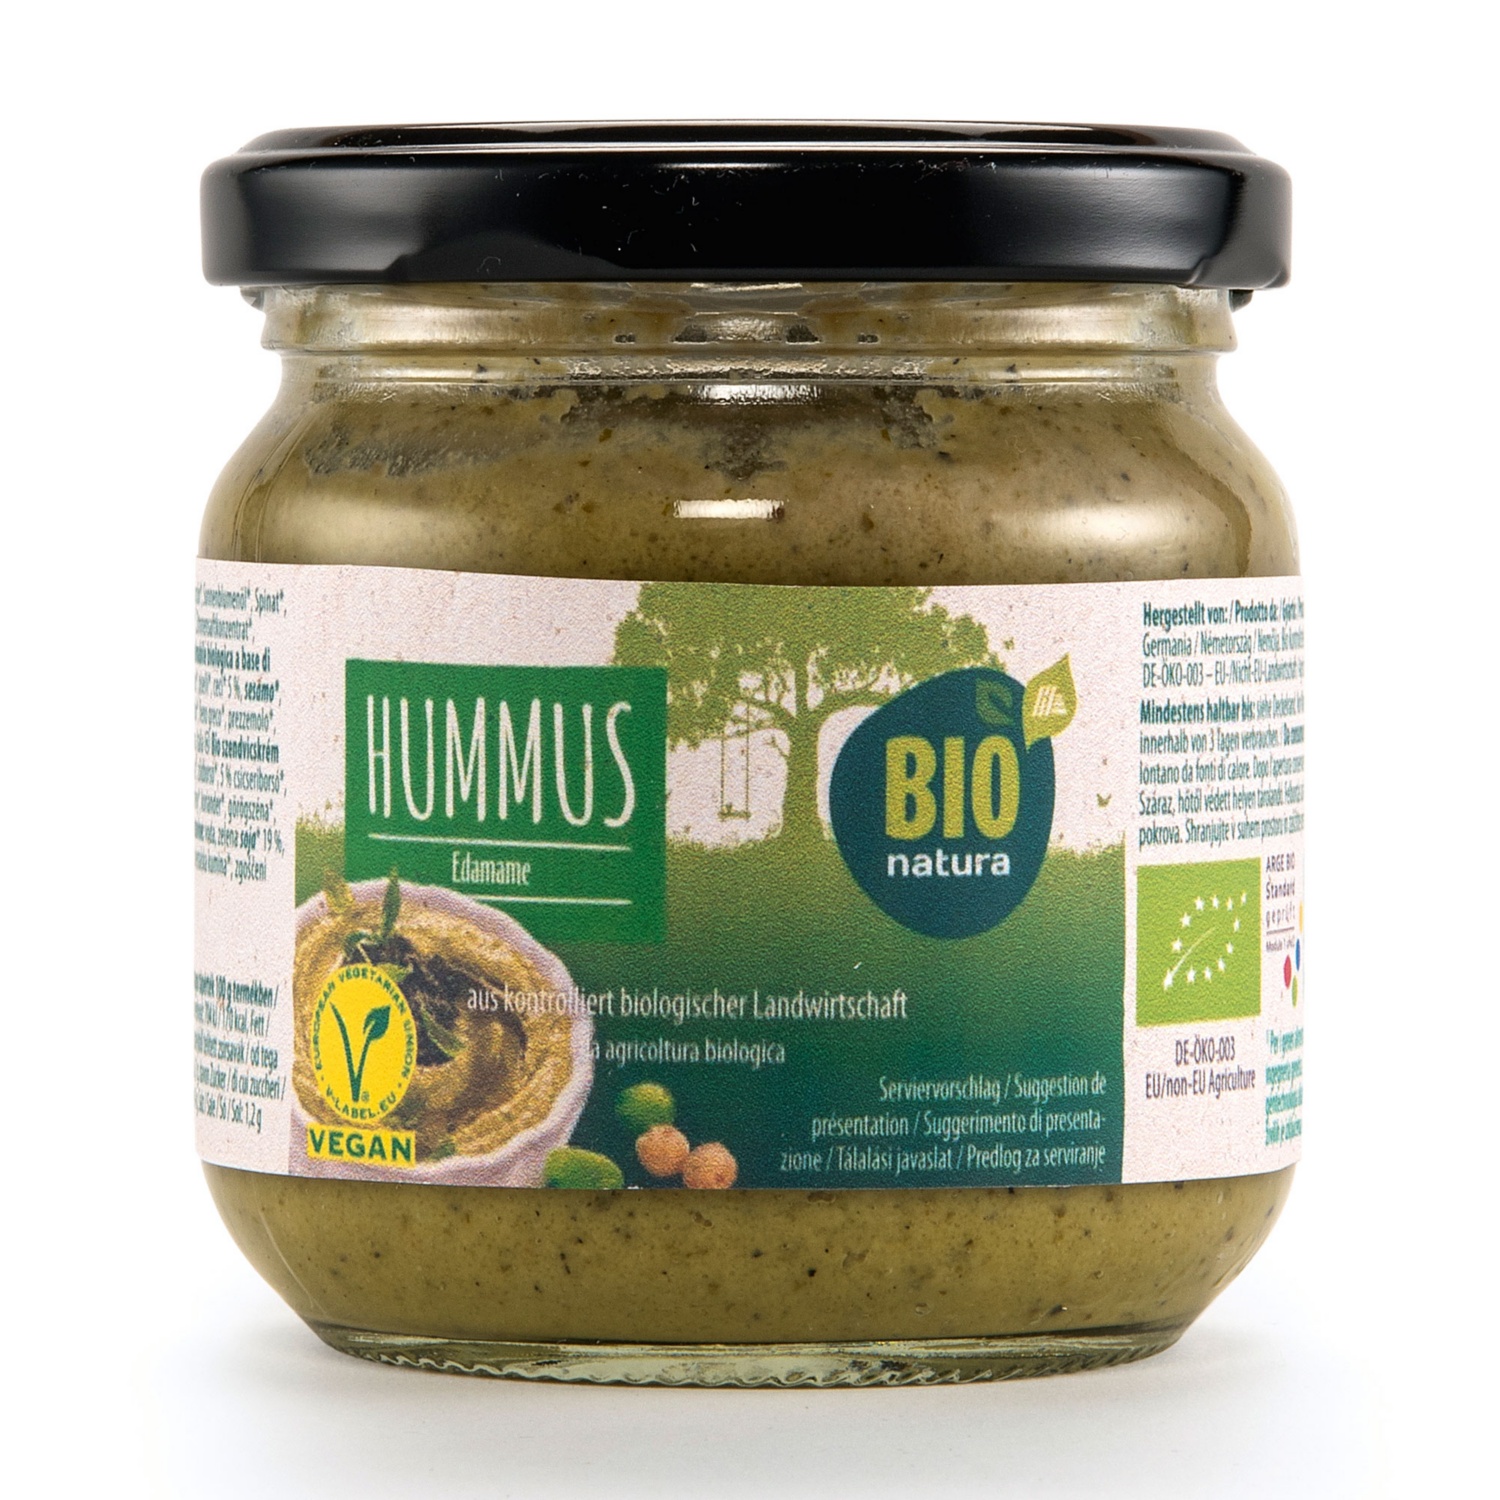 BIO NATURA Bio Hummus, Edamame